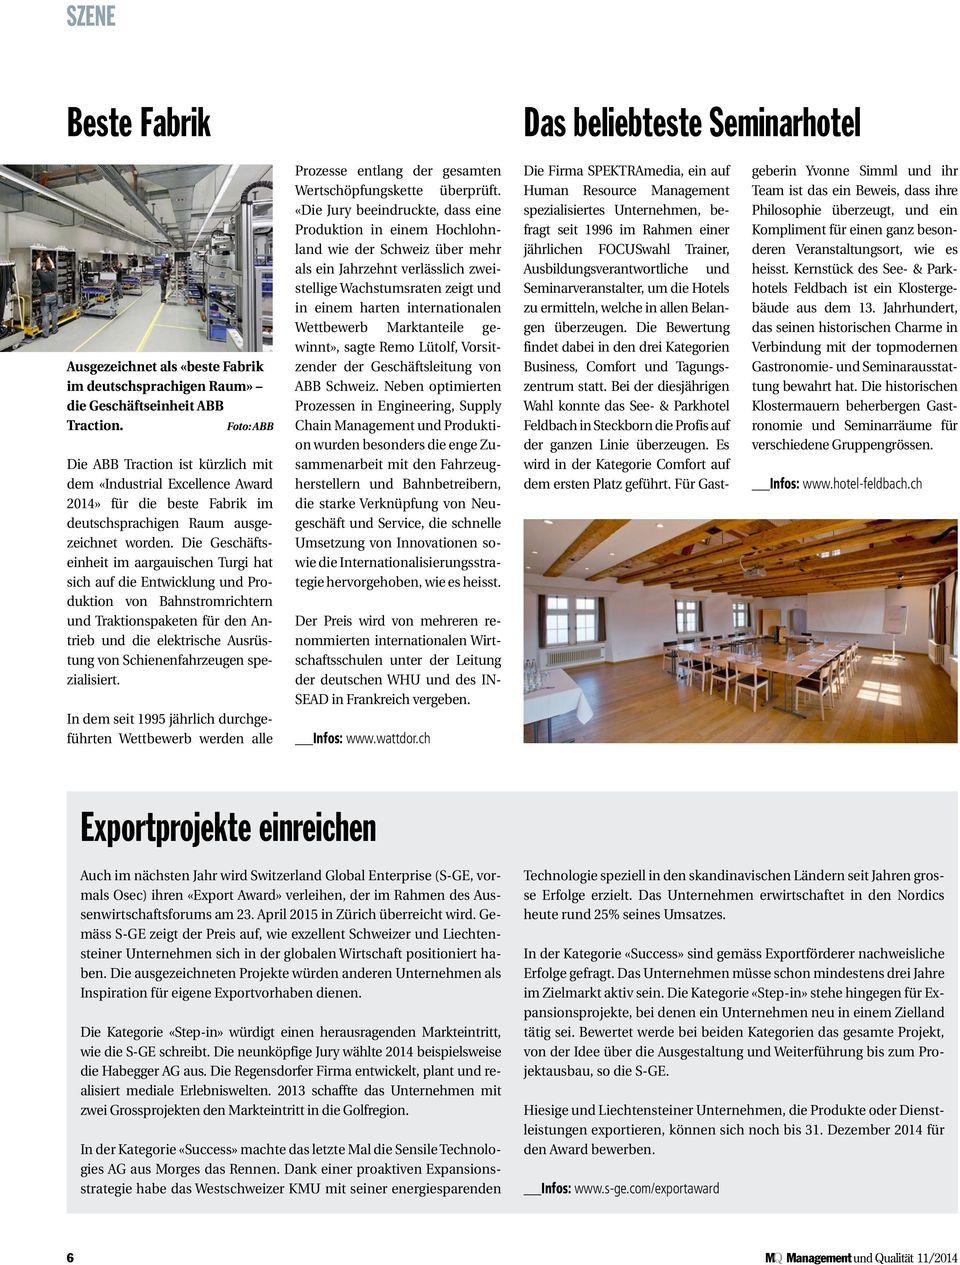 Die Geschäftseinheit im aargauischen Turgi hat sich auf die Entwicklung und Produktion von Bahnstromrichtern und Traktionspaketen für den Antrieb und die elektrische Ausrüstung von Schienenfahrzeugen